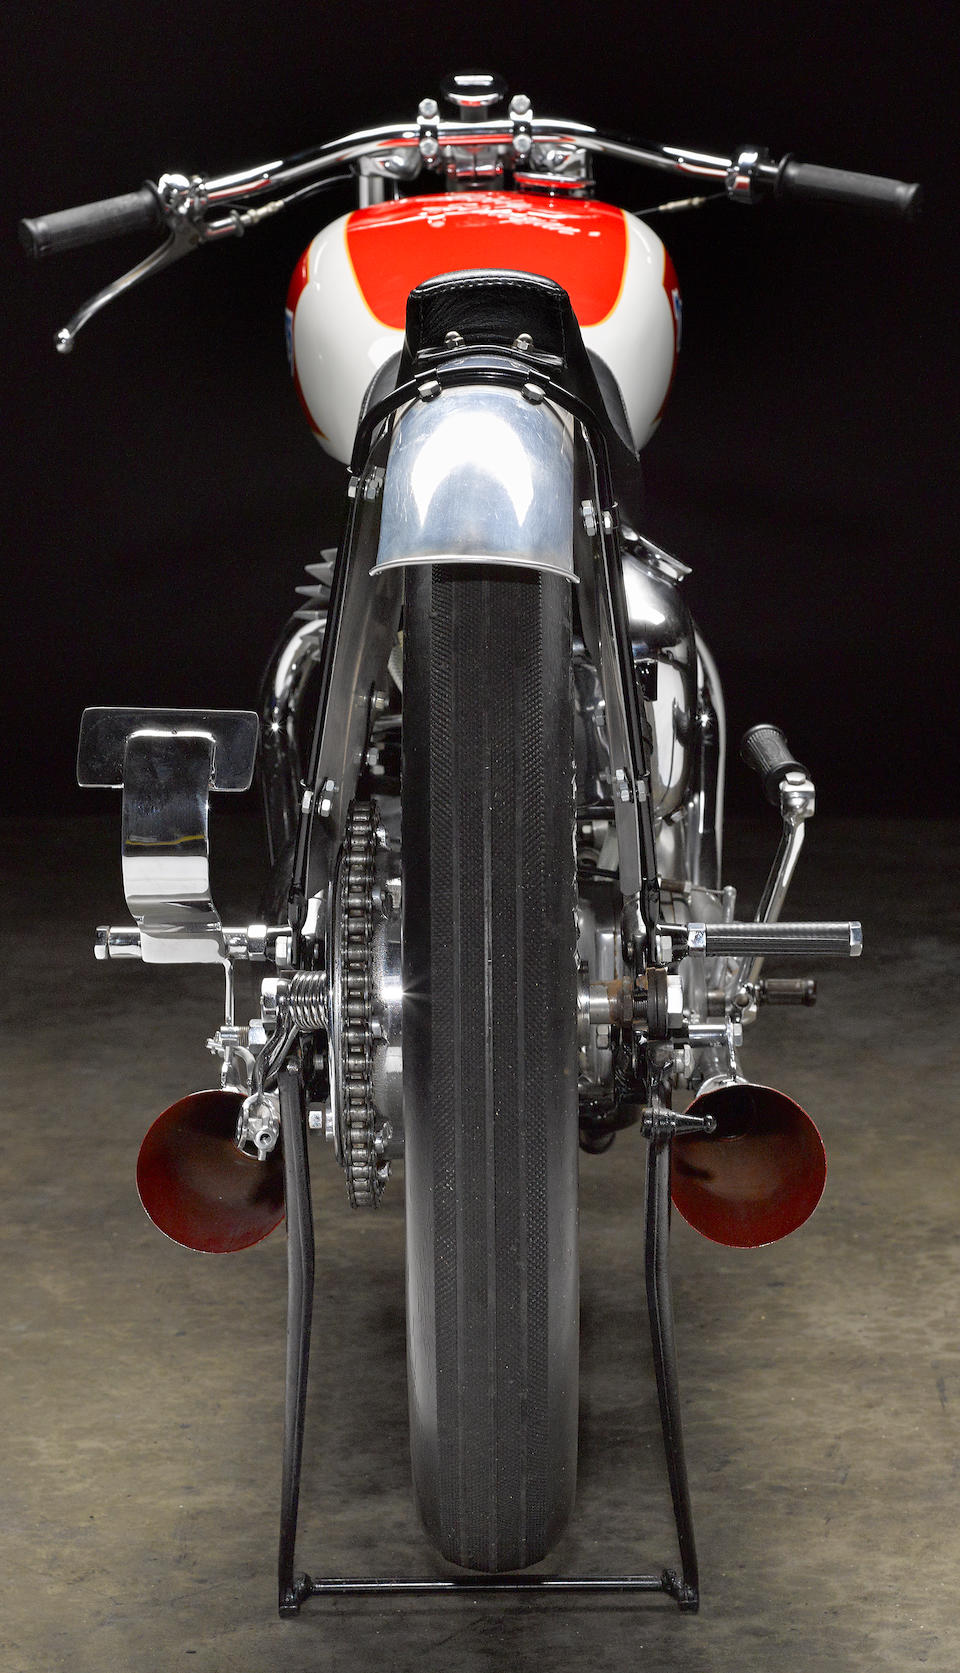 1951 Triumph 649cc 6T Bonneville Salt Flats Racing Motorcycle Frame no. 6268N Engine no. 6T-8602NA